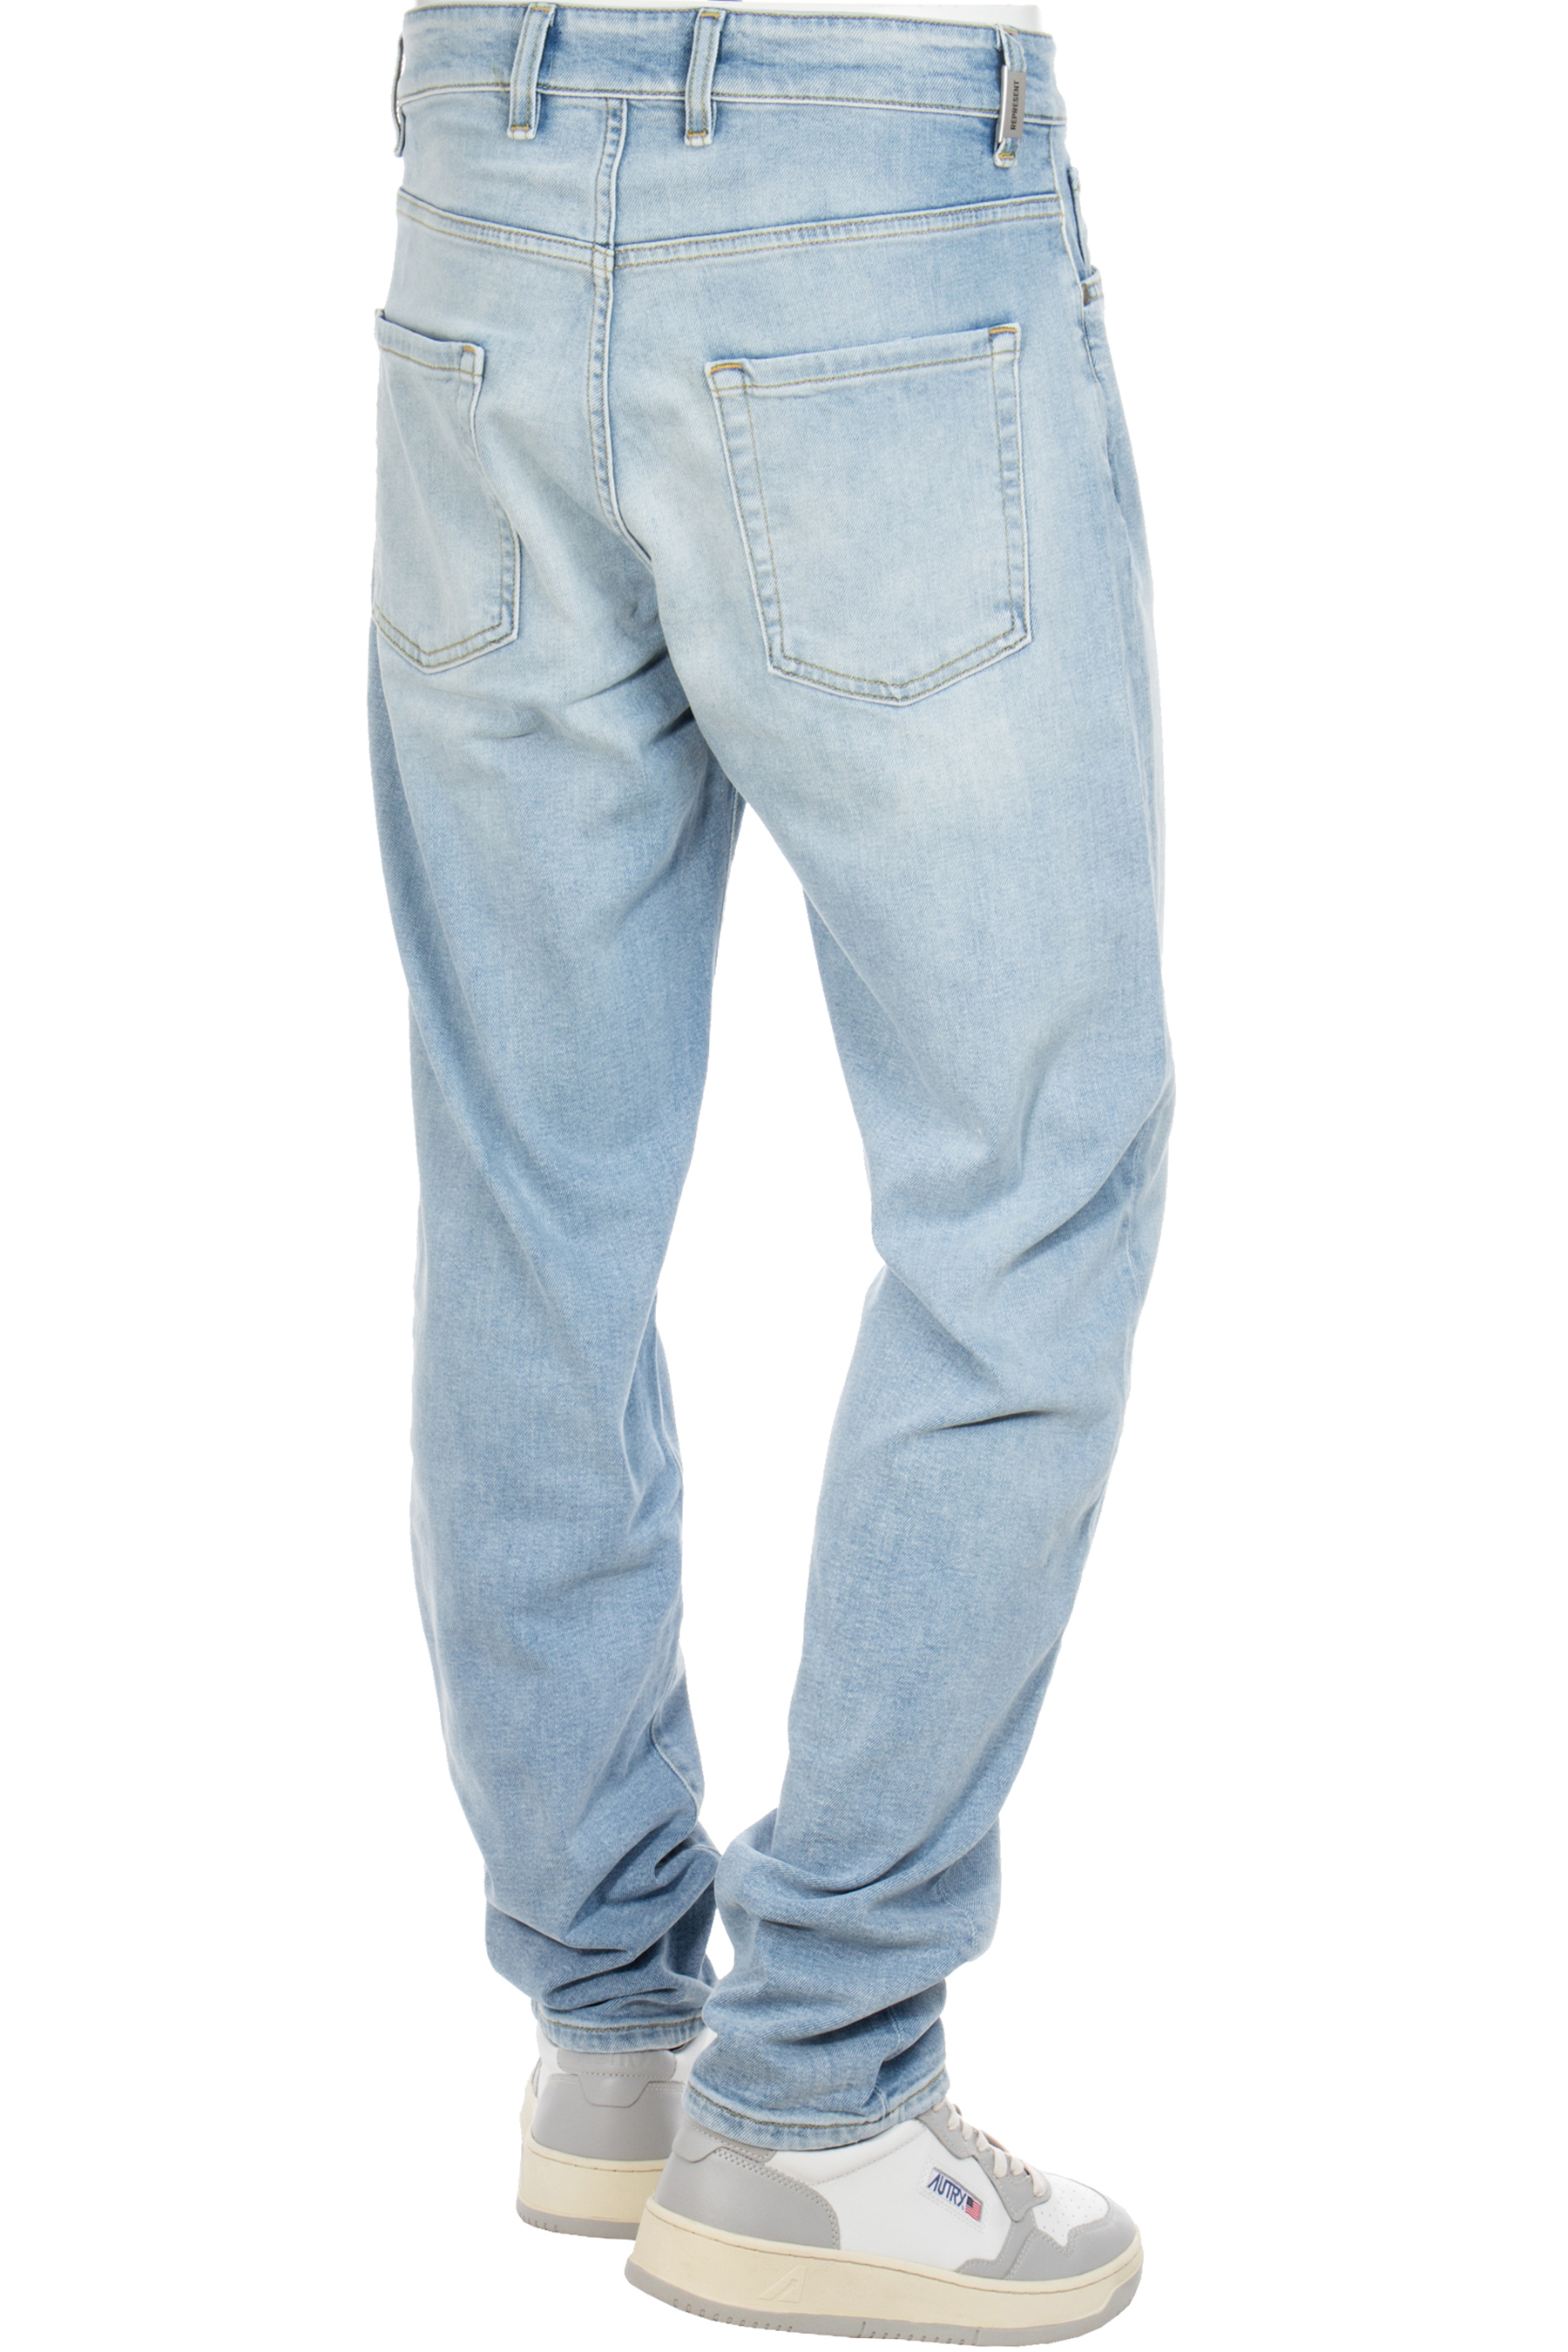 REPRESENT Essential Denim Blue Cream, Jeans